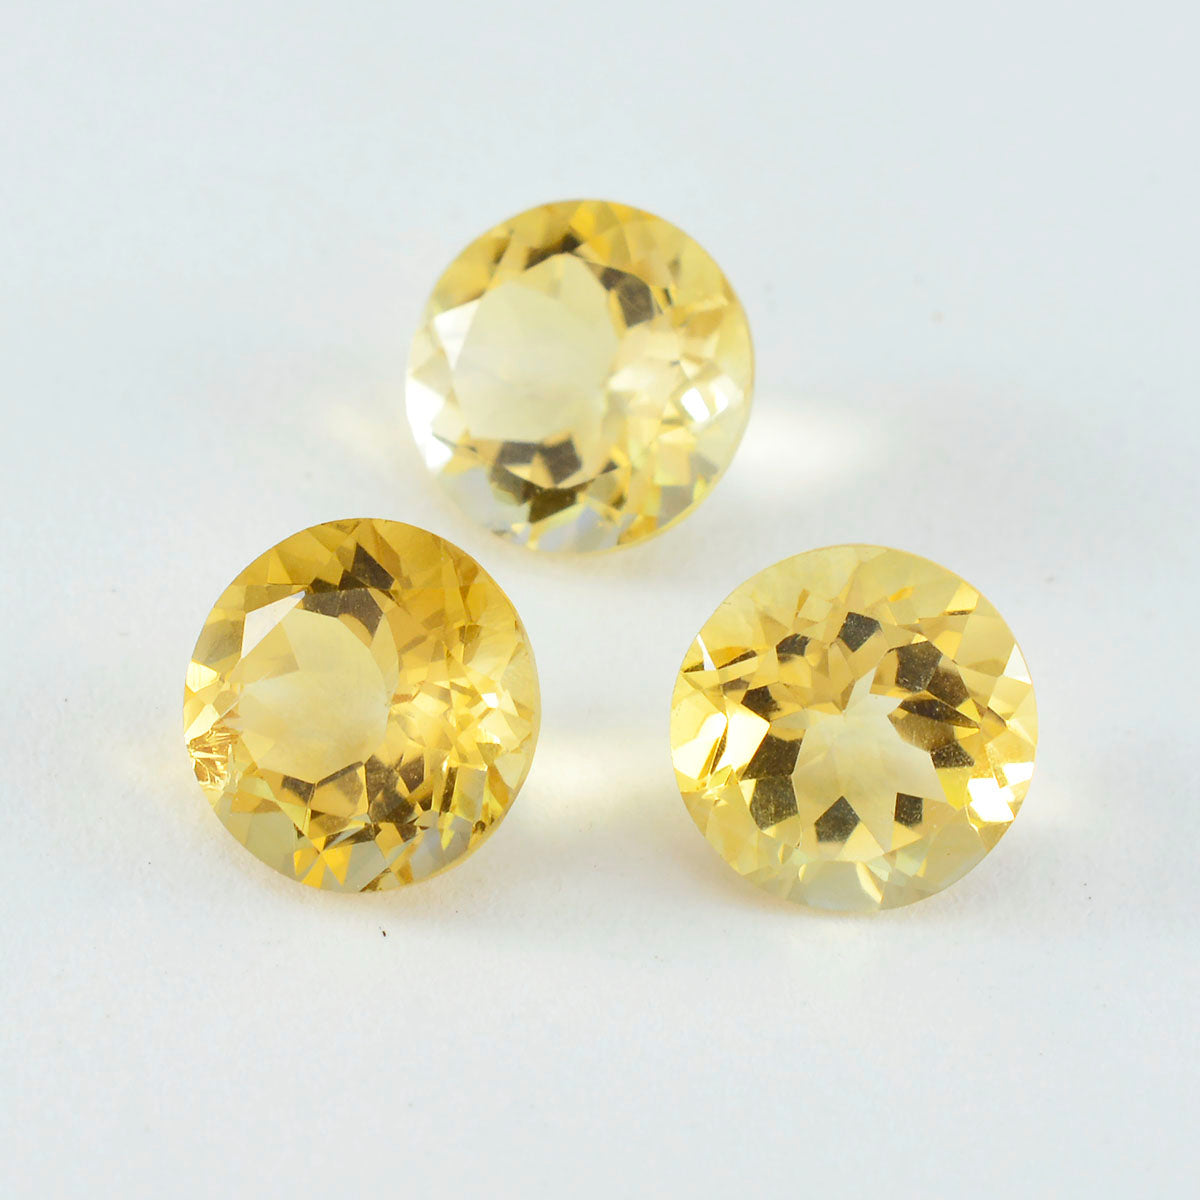 riyogems 1шт натуральный желтый цитрин ограненный 9x9 мм круглая форма качество ААА свободный драгоценный камень